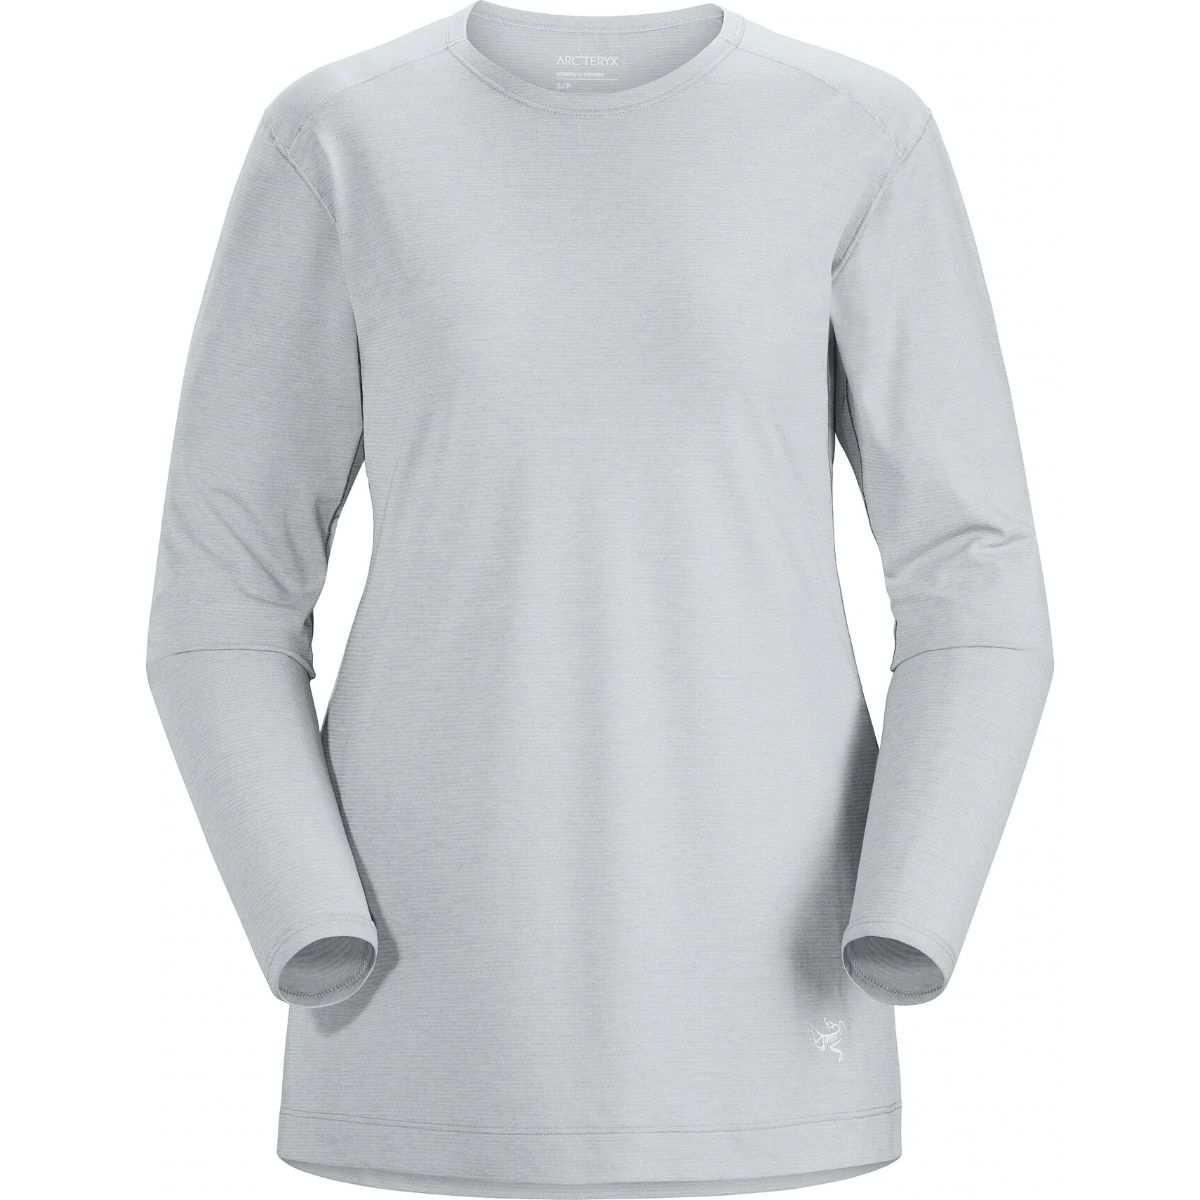 ARC’TERYX SYSTEM_A  コパル バード Tシャツ M Tシャツ/カットソー(半袖/袖なし) 最新作